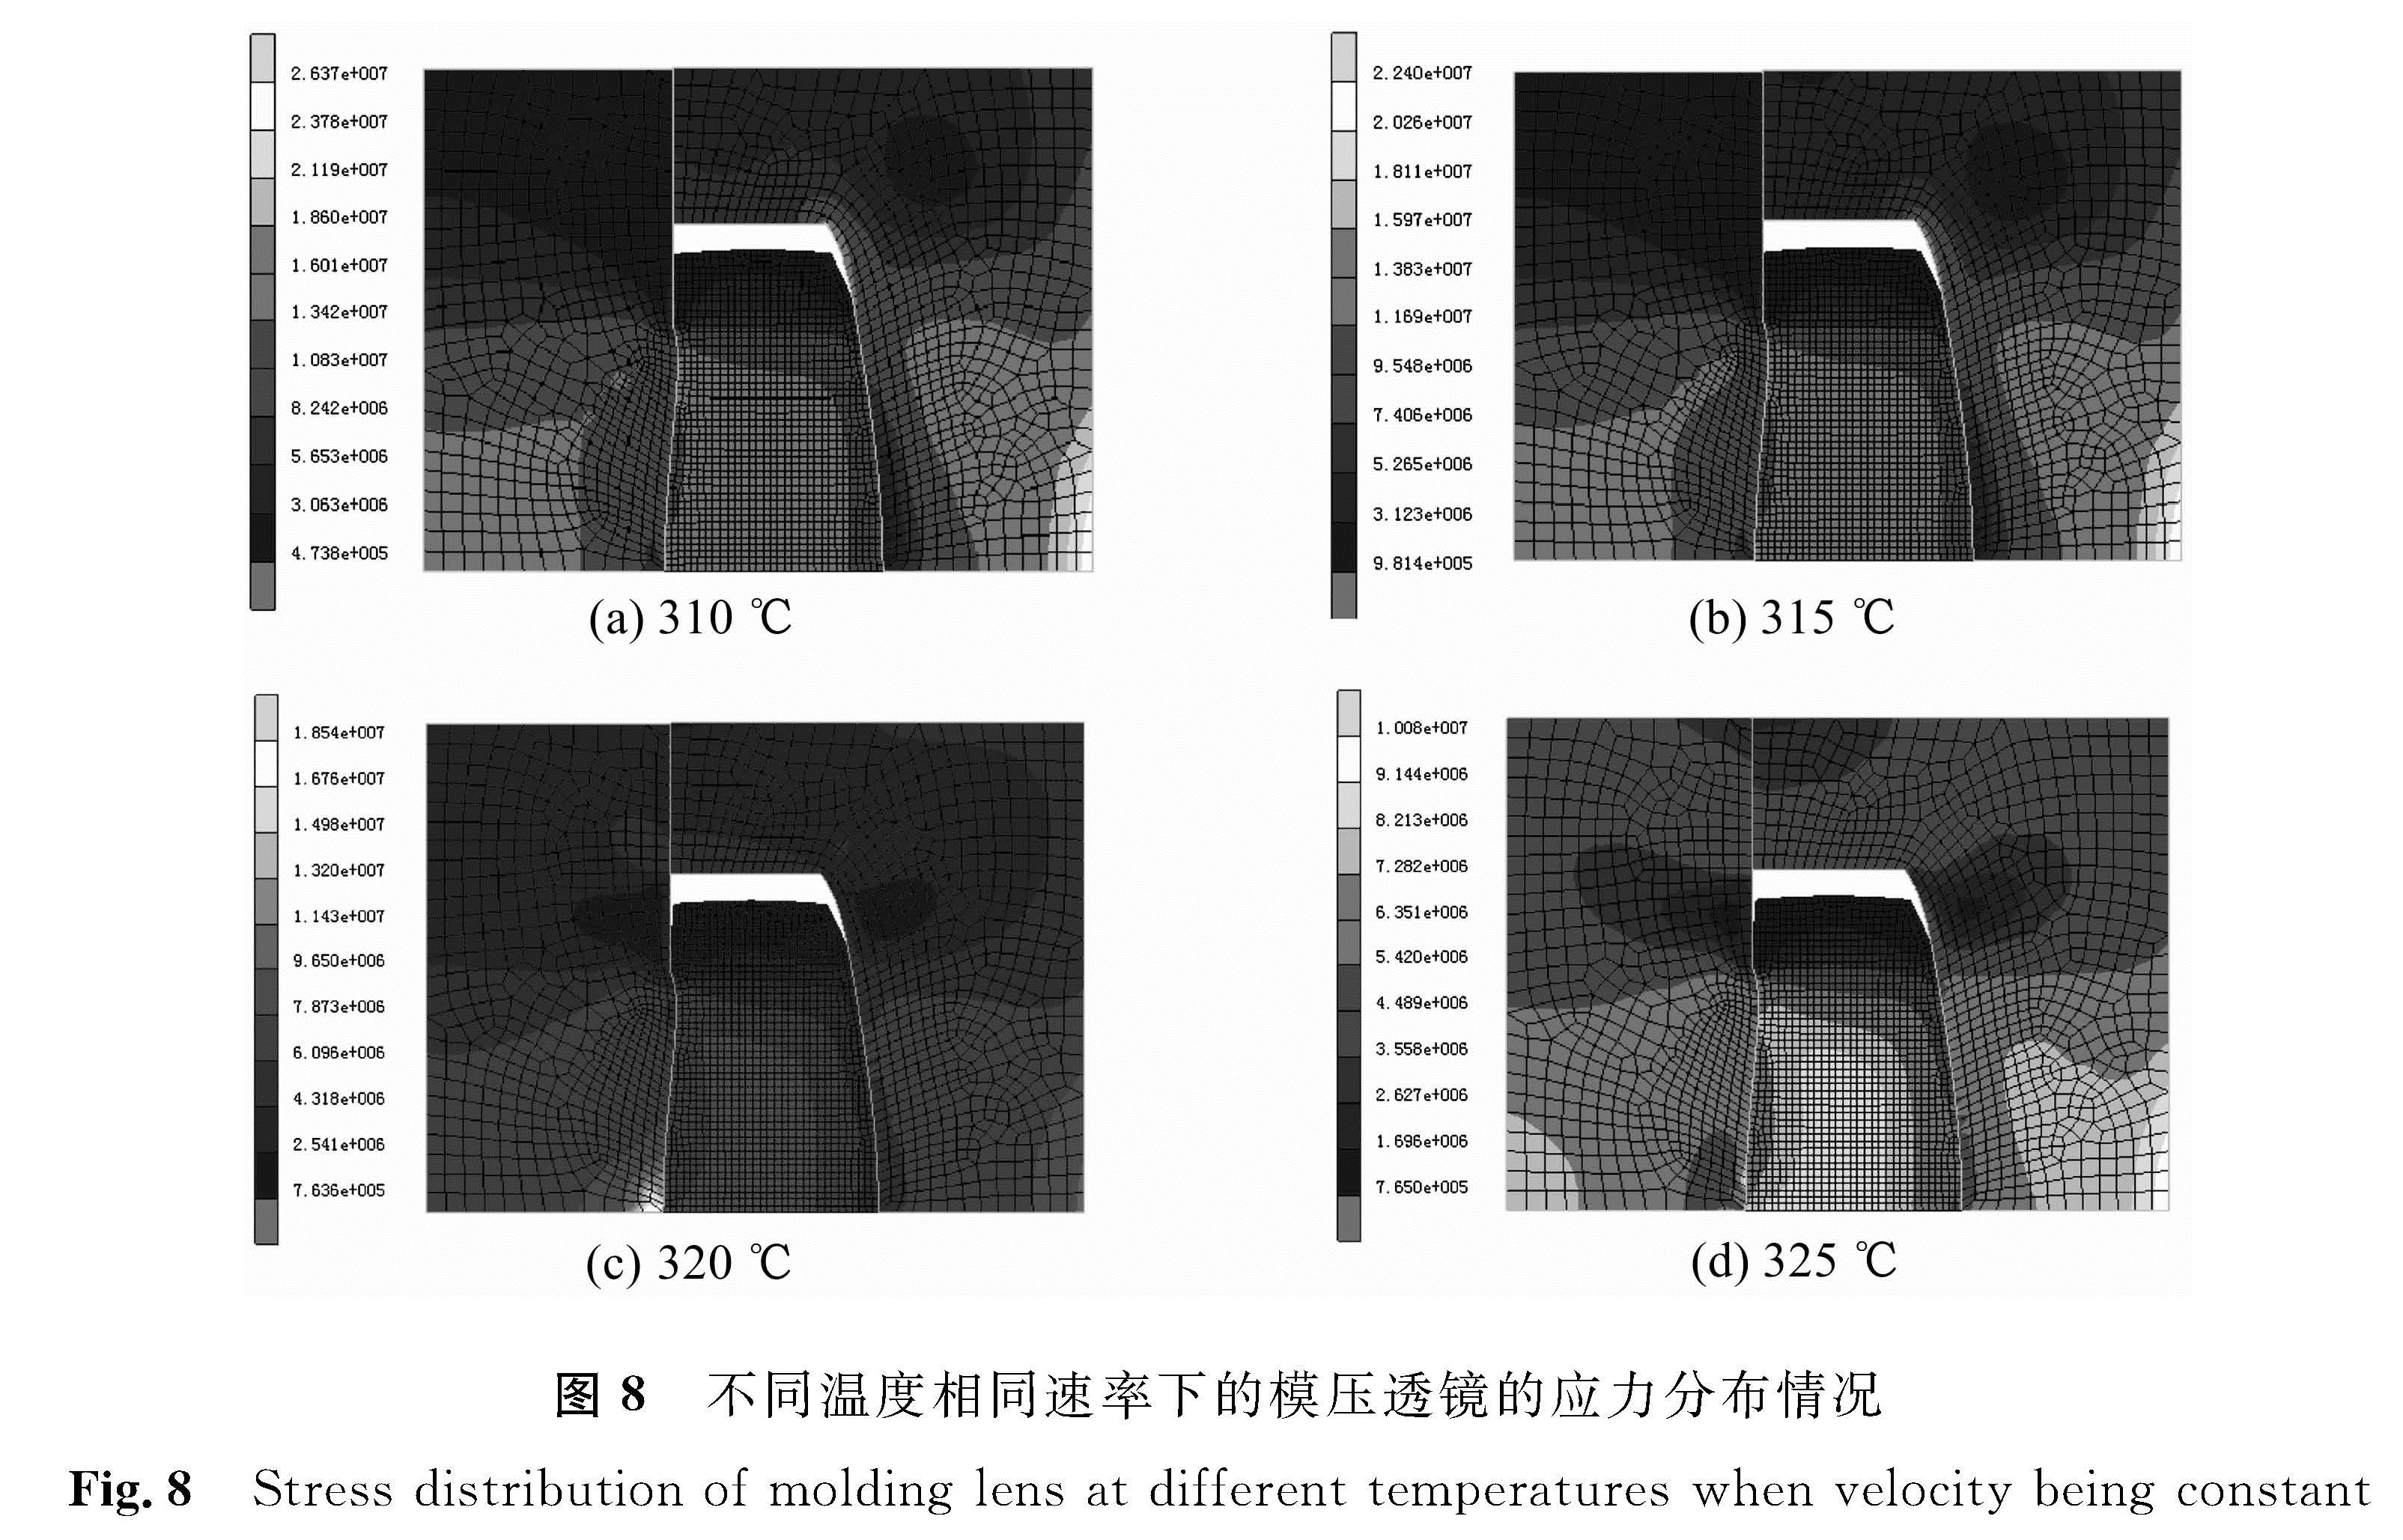 图8 不同温度相同速率下的模压透镜的应力分布情况<br/>Fig.8 Stress distribution of molding lens at different temperatures when velocity being constant